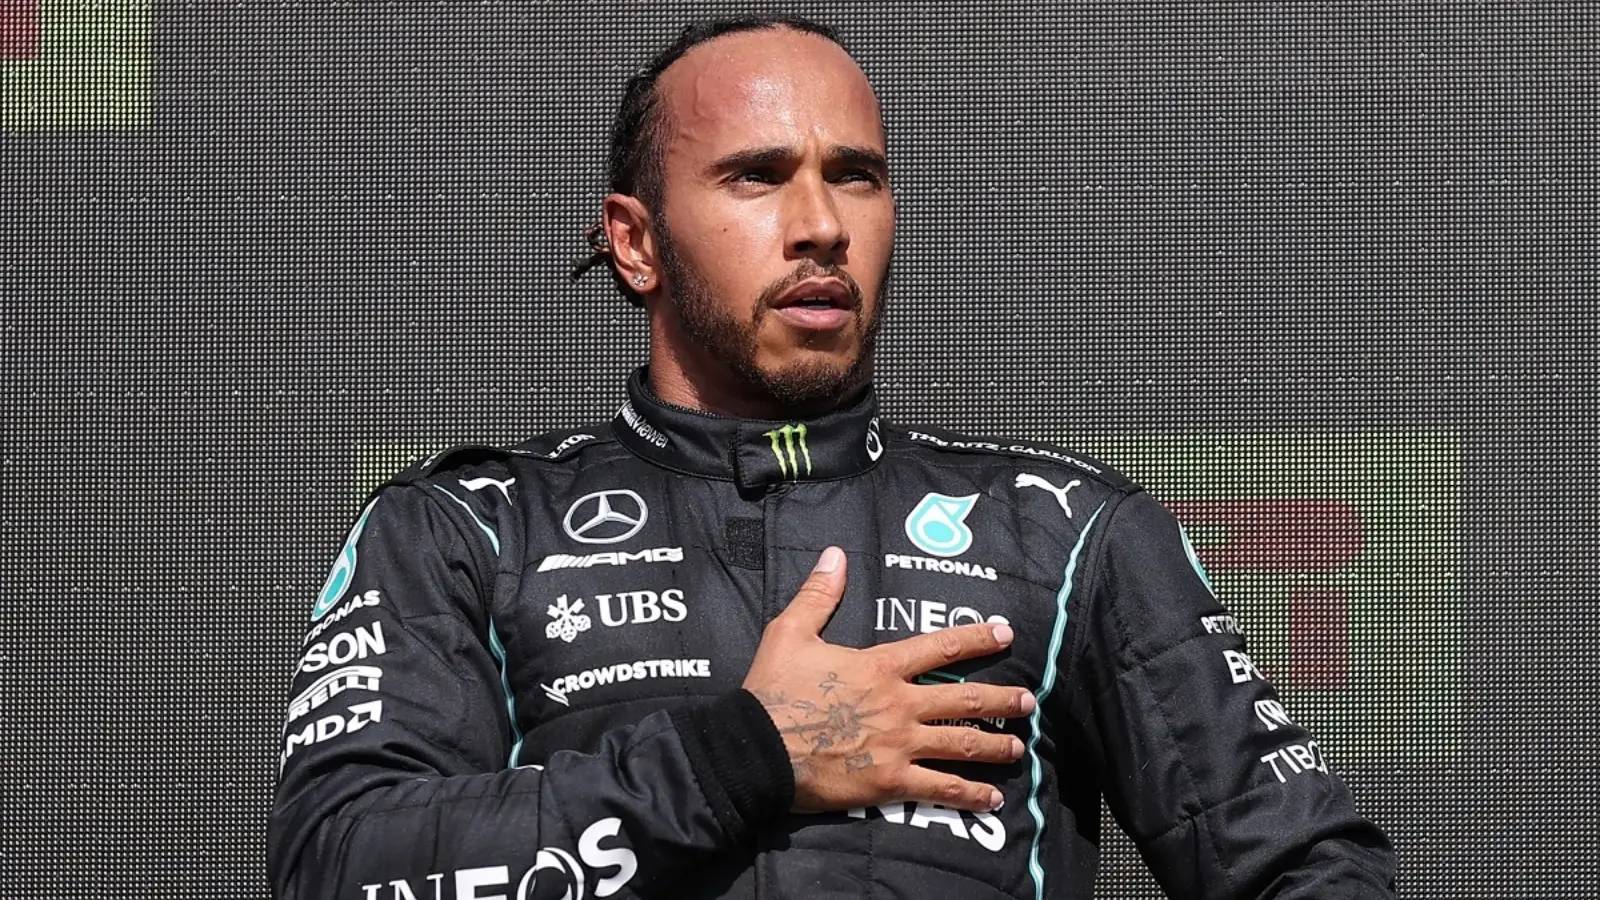 Formuła 1 Lewis Hamilton ZSZOKOWANY Ogłoszenie OSTATNIE RADY wykonane przez FIA